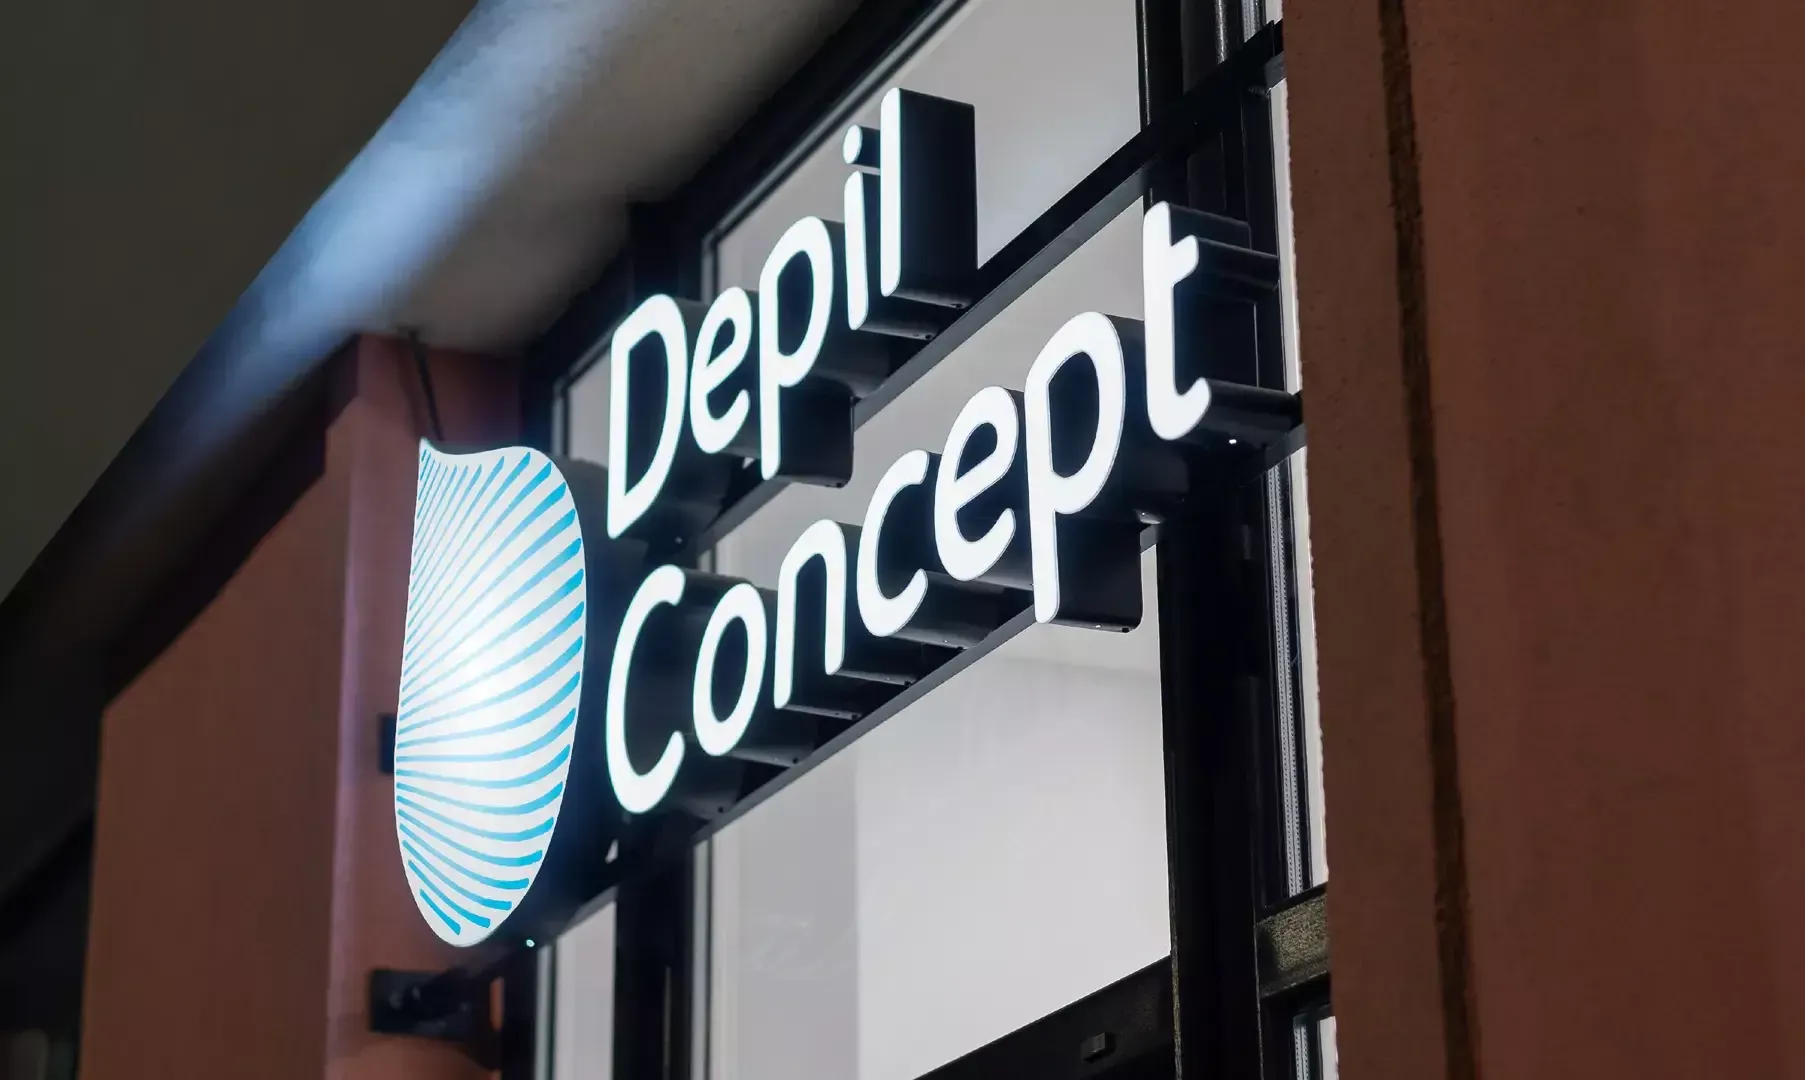 Lettere illuminate a LED di Depil Concept - Depil Concept Lettere da esterno illuminate a LED